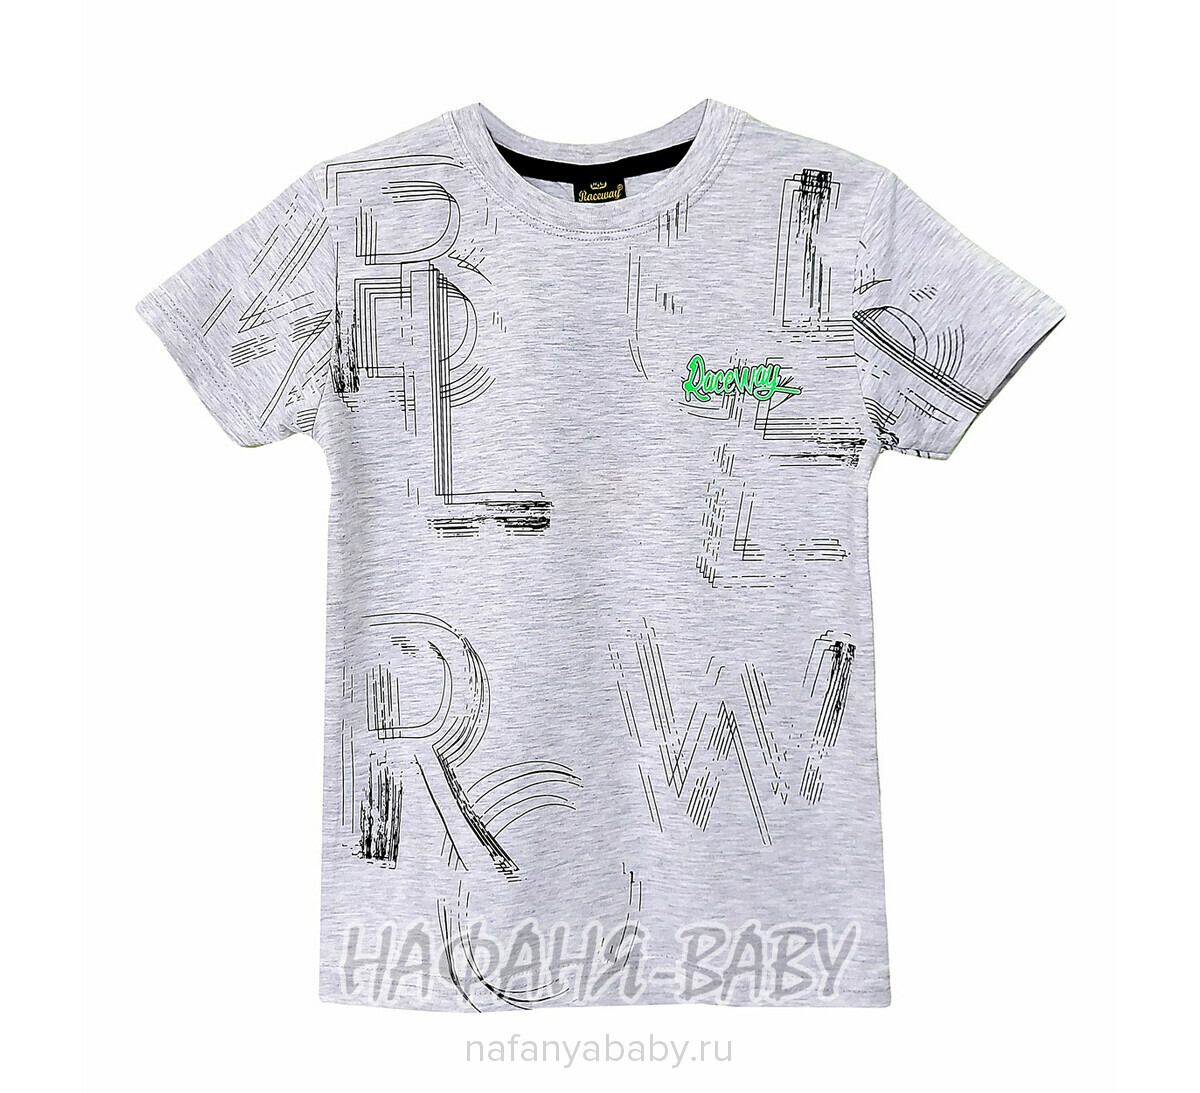 Детская футболка RCW арт. 5830, 5-8 лет, цвет серый меланж, оптом Турция